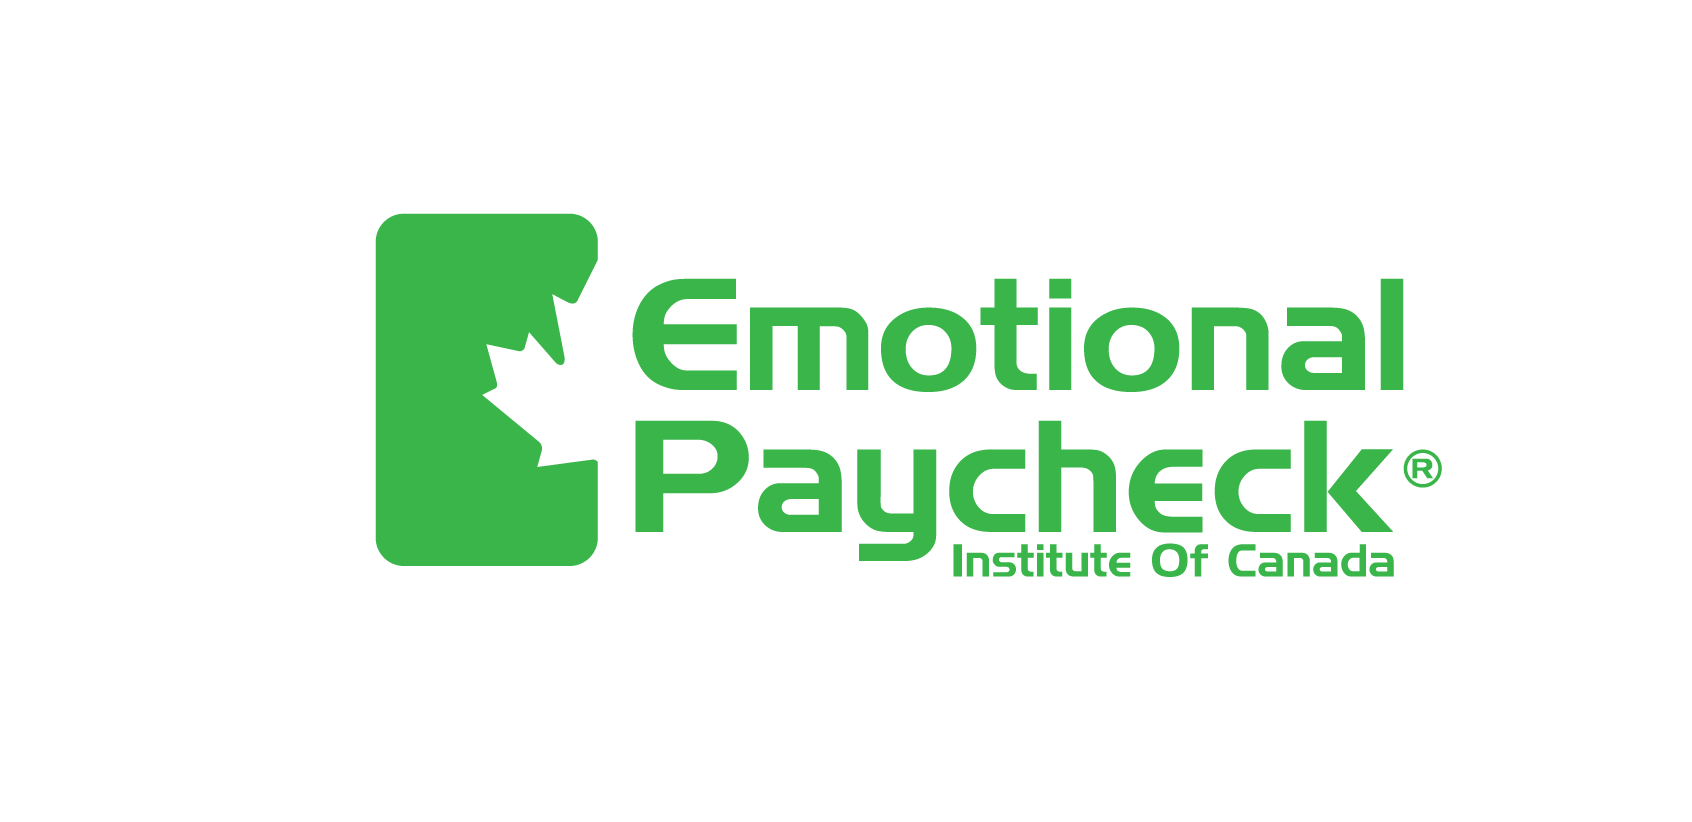 Embajadores del Salario Emocional - Emotional Paycheck®